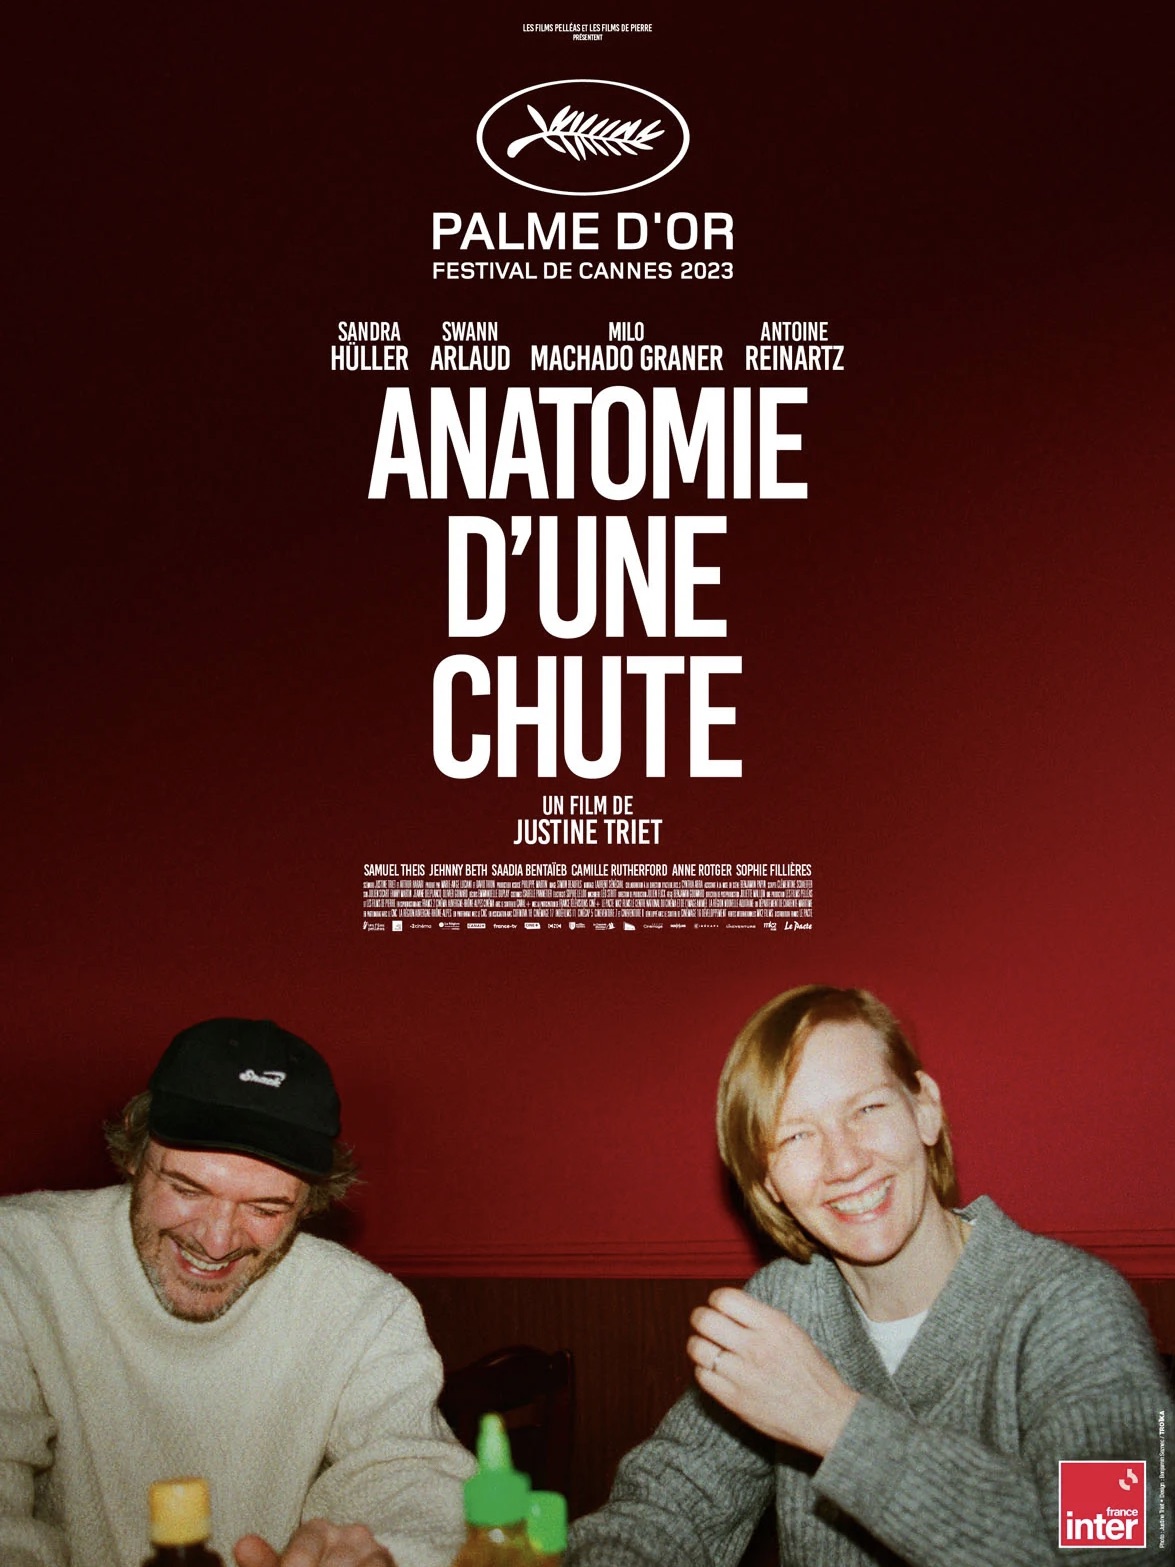 Cinémage partenaire de la Palme d’or 2023 !